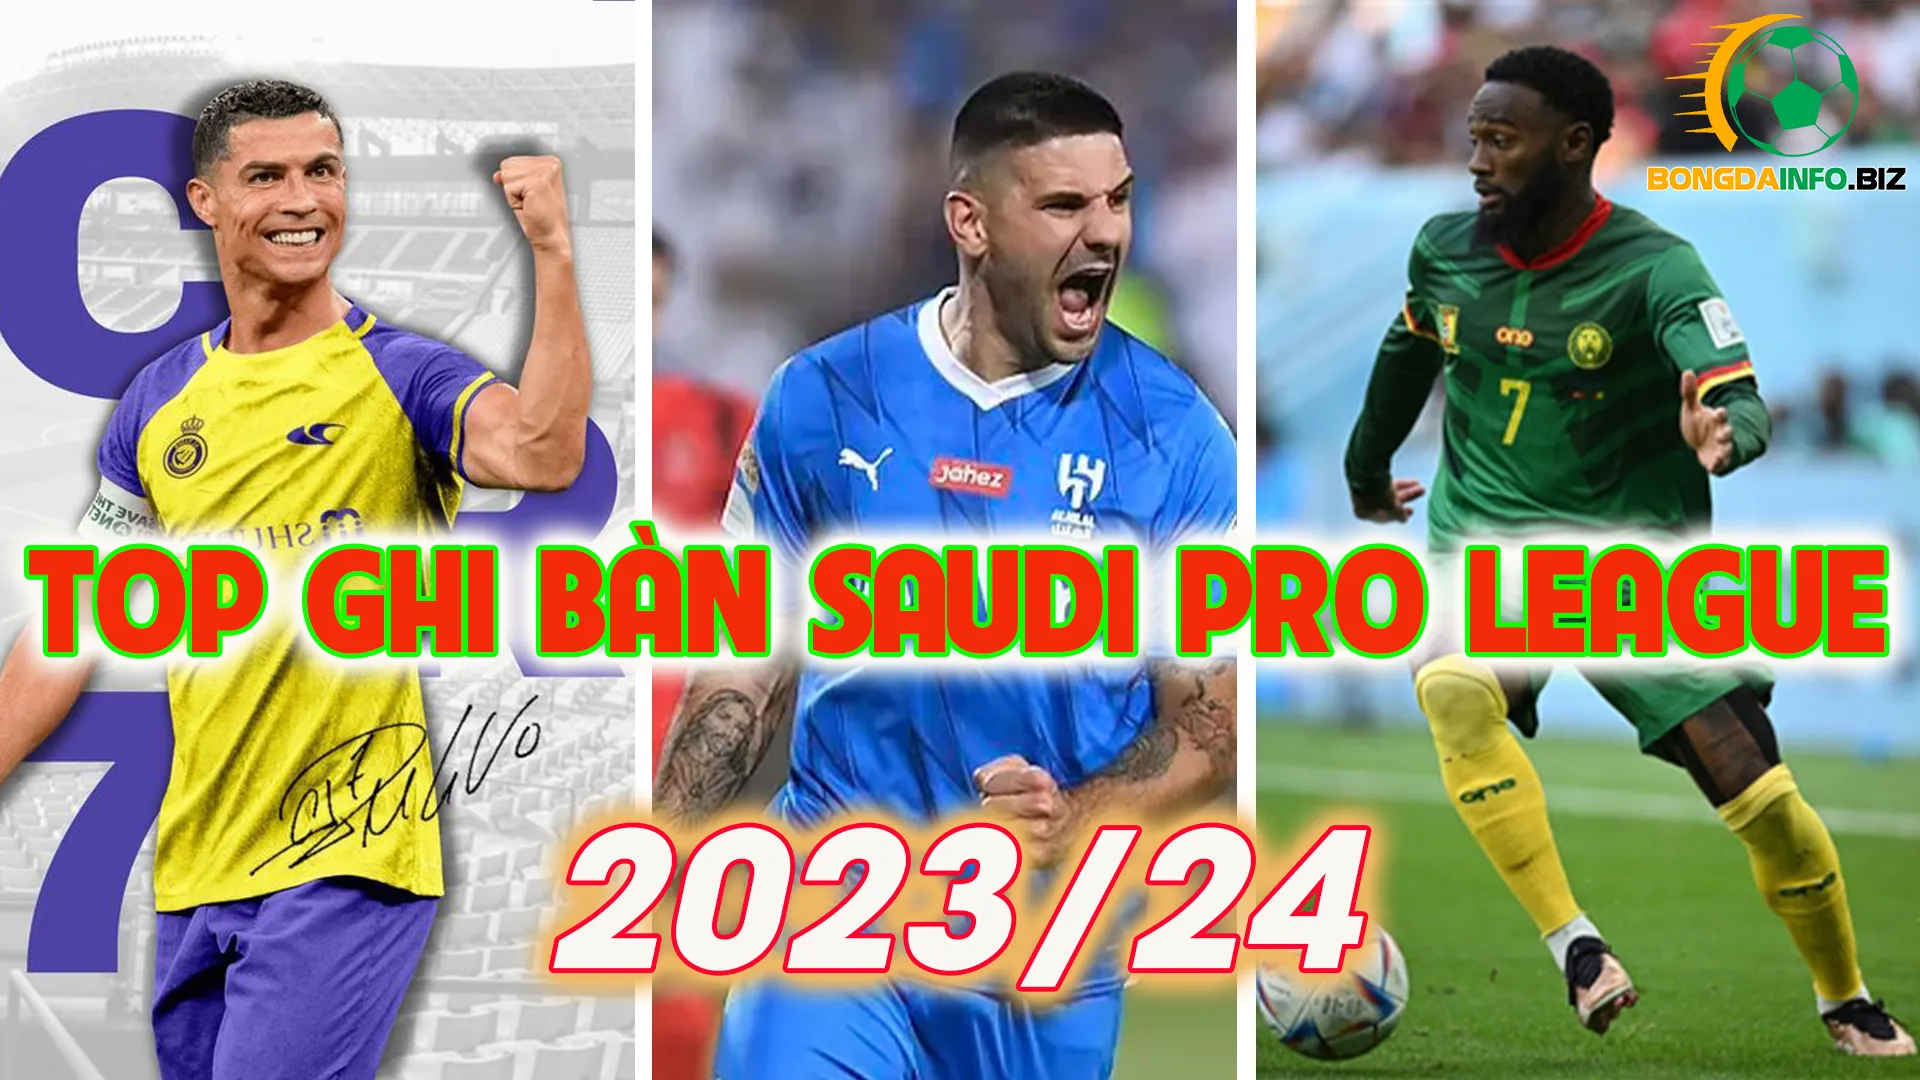 Top ghi bàn Saudi Pro League 2023/24 mới nhất và chính xác nhất